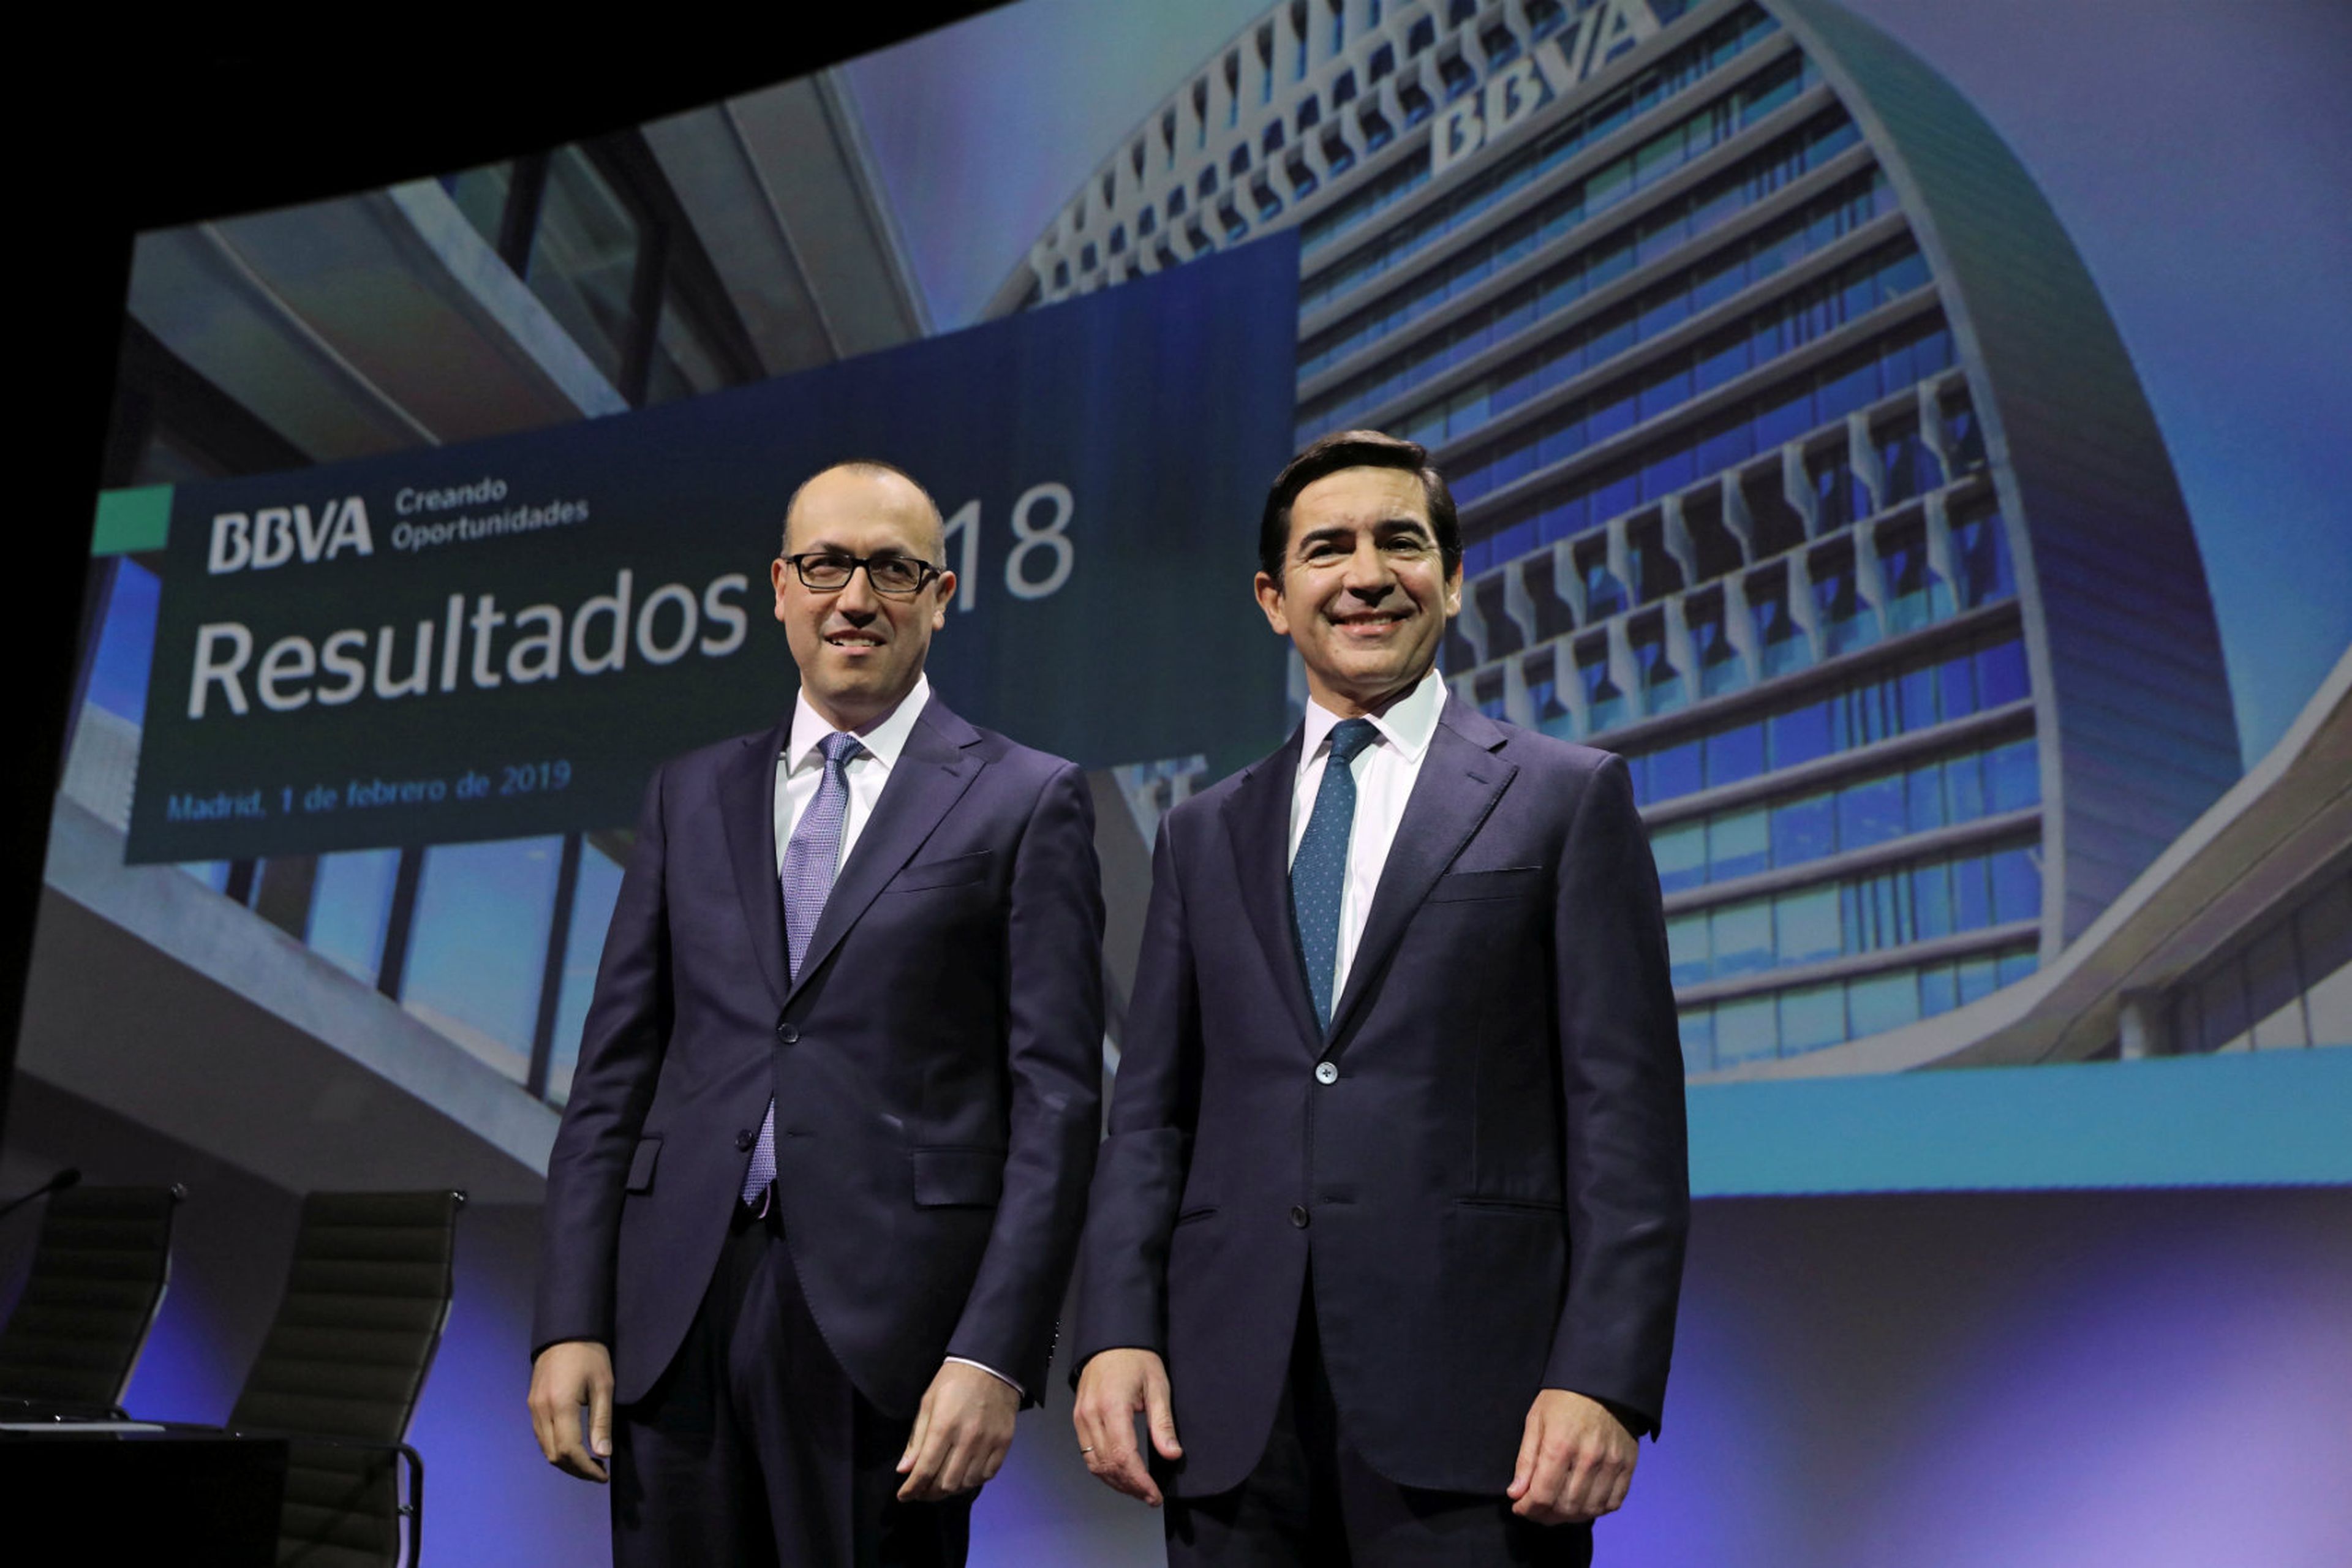 El consejero delegado de BBVA, Onur Genç, y el presidente de BBVA, Carlos Torres.